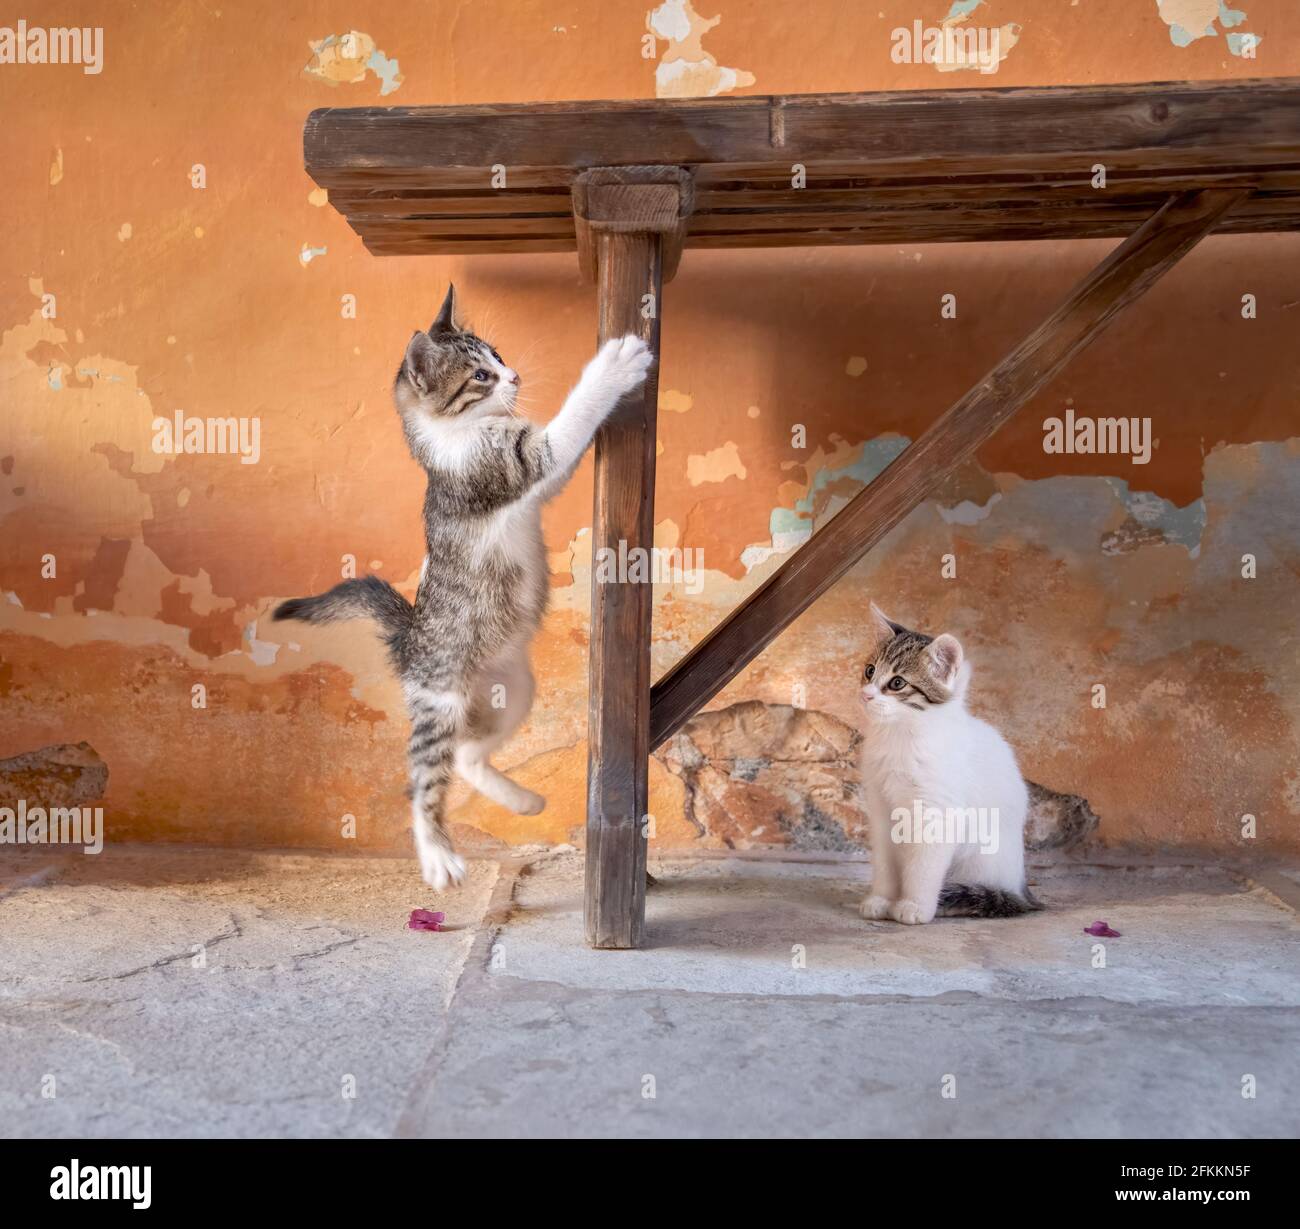 Cute gatto babys giocare, un kitten divertente che salta di fronte a una parete colorata in terracotta vintage con buccia di vernice incrostata Foto Stock